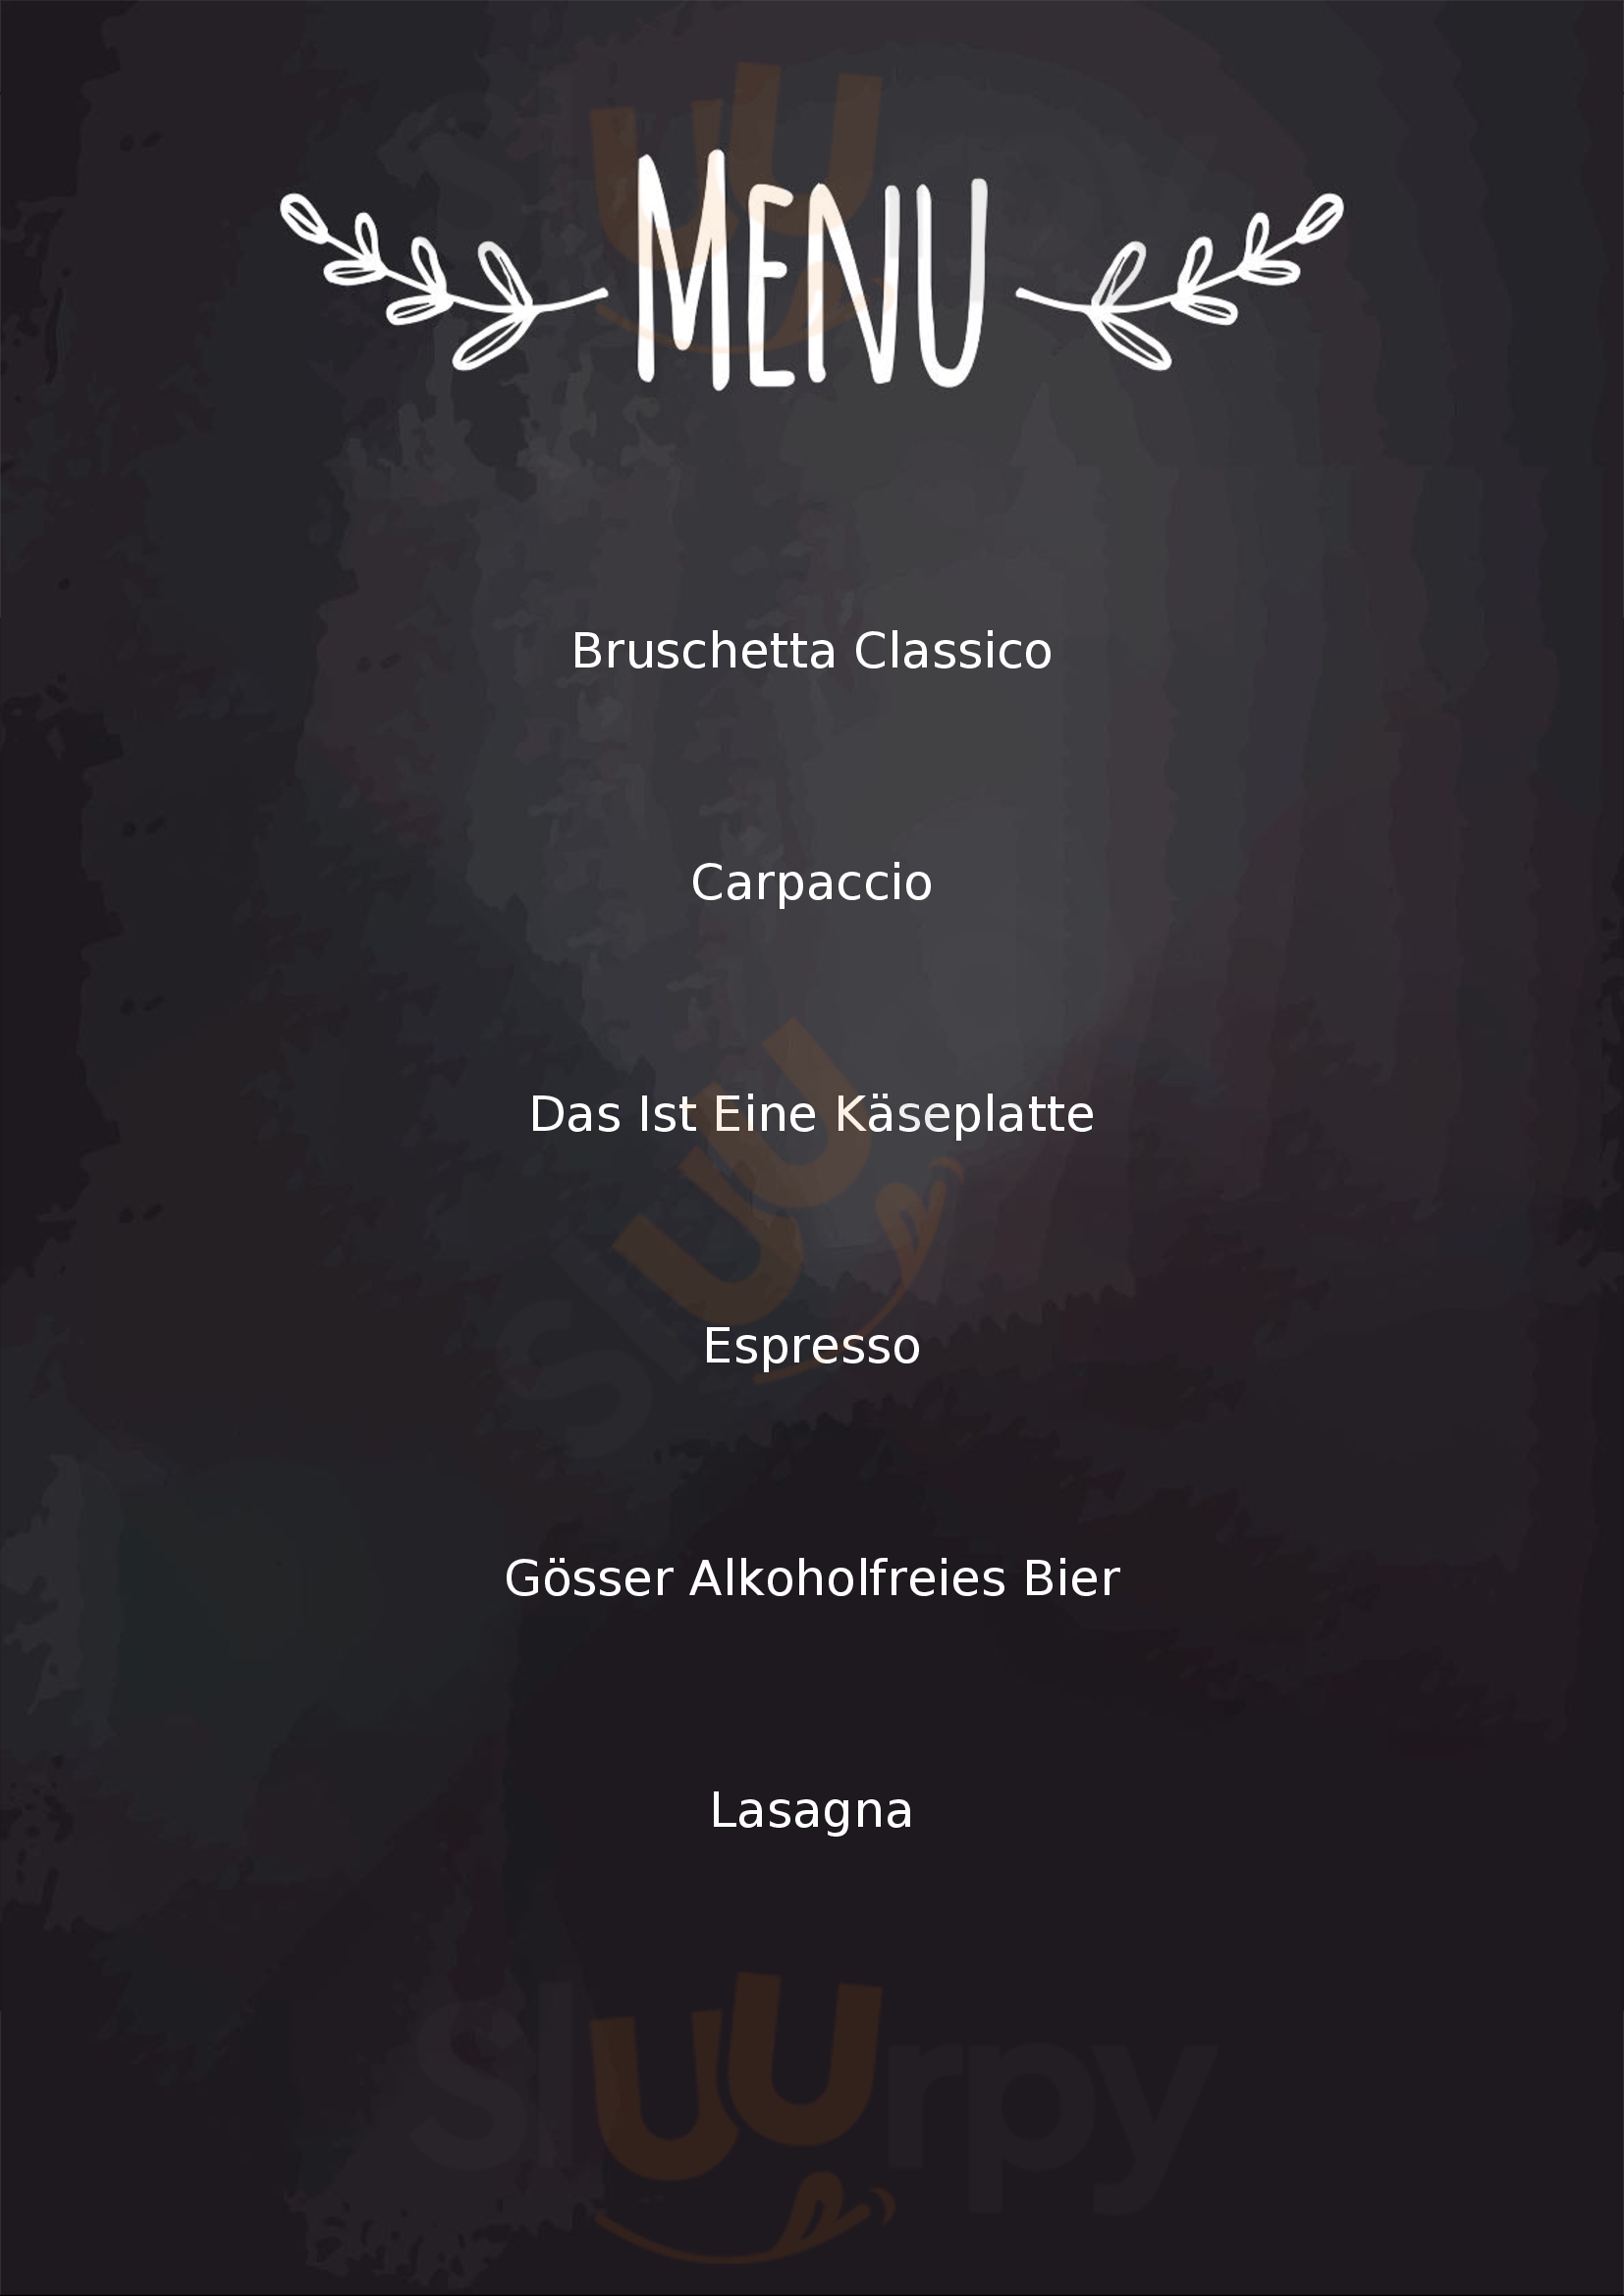 Gastronomia Pane E Vino Bad Hofgastein Menu - 1